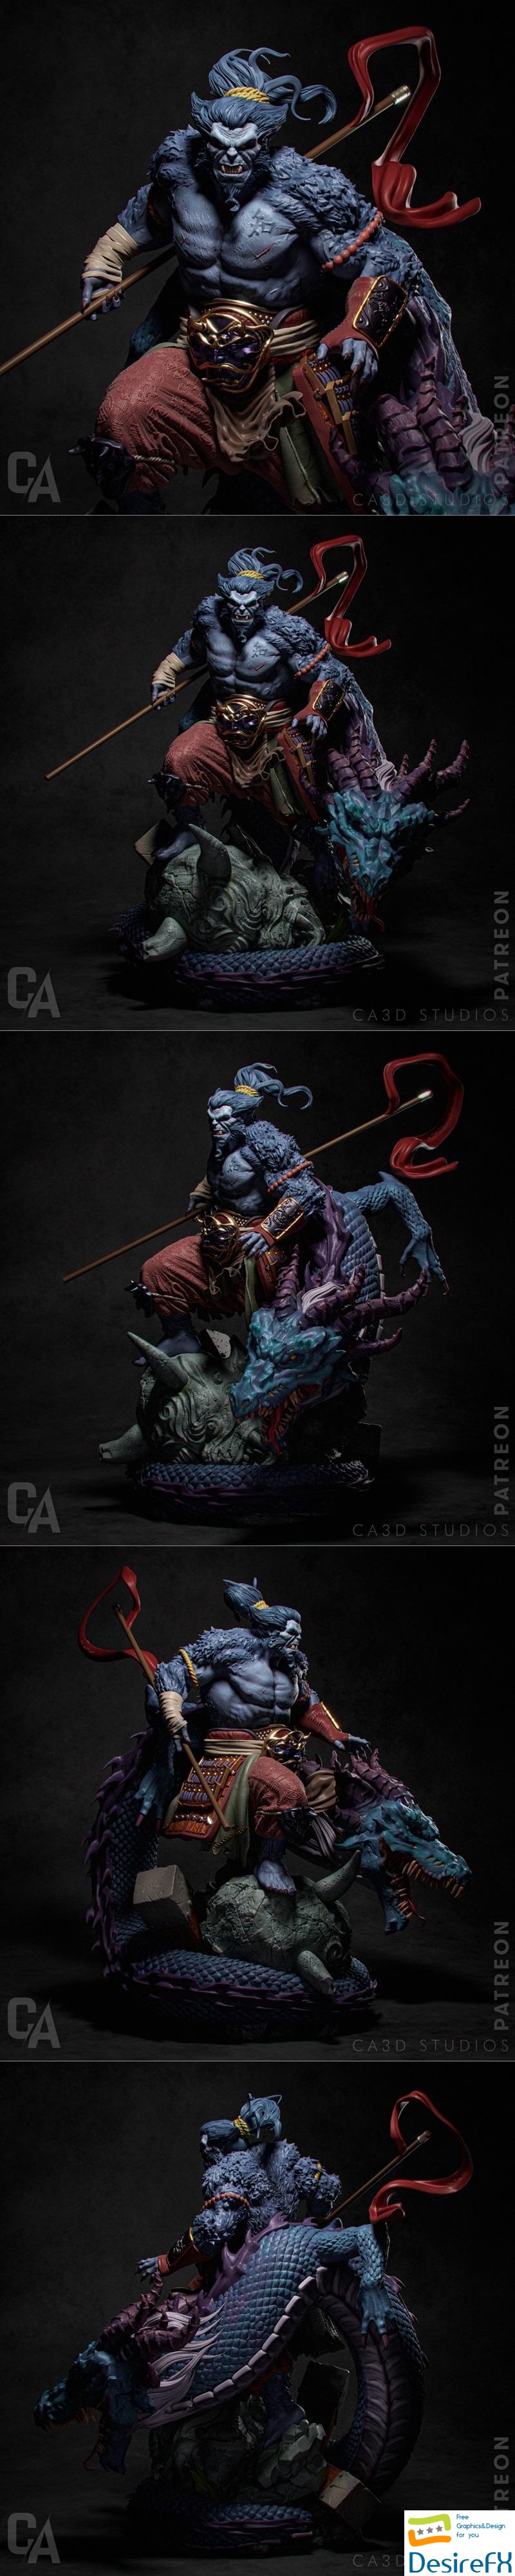 Ca 3d Studios - Beast Samurai 3D Print